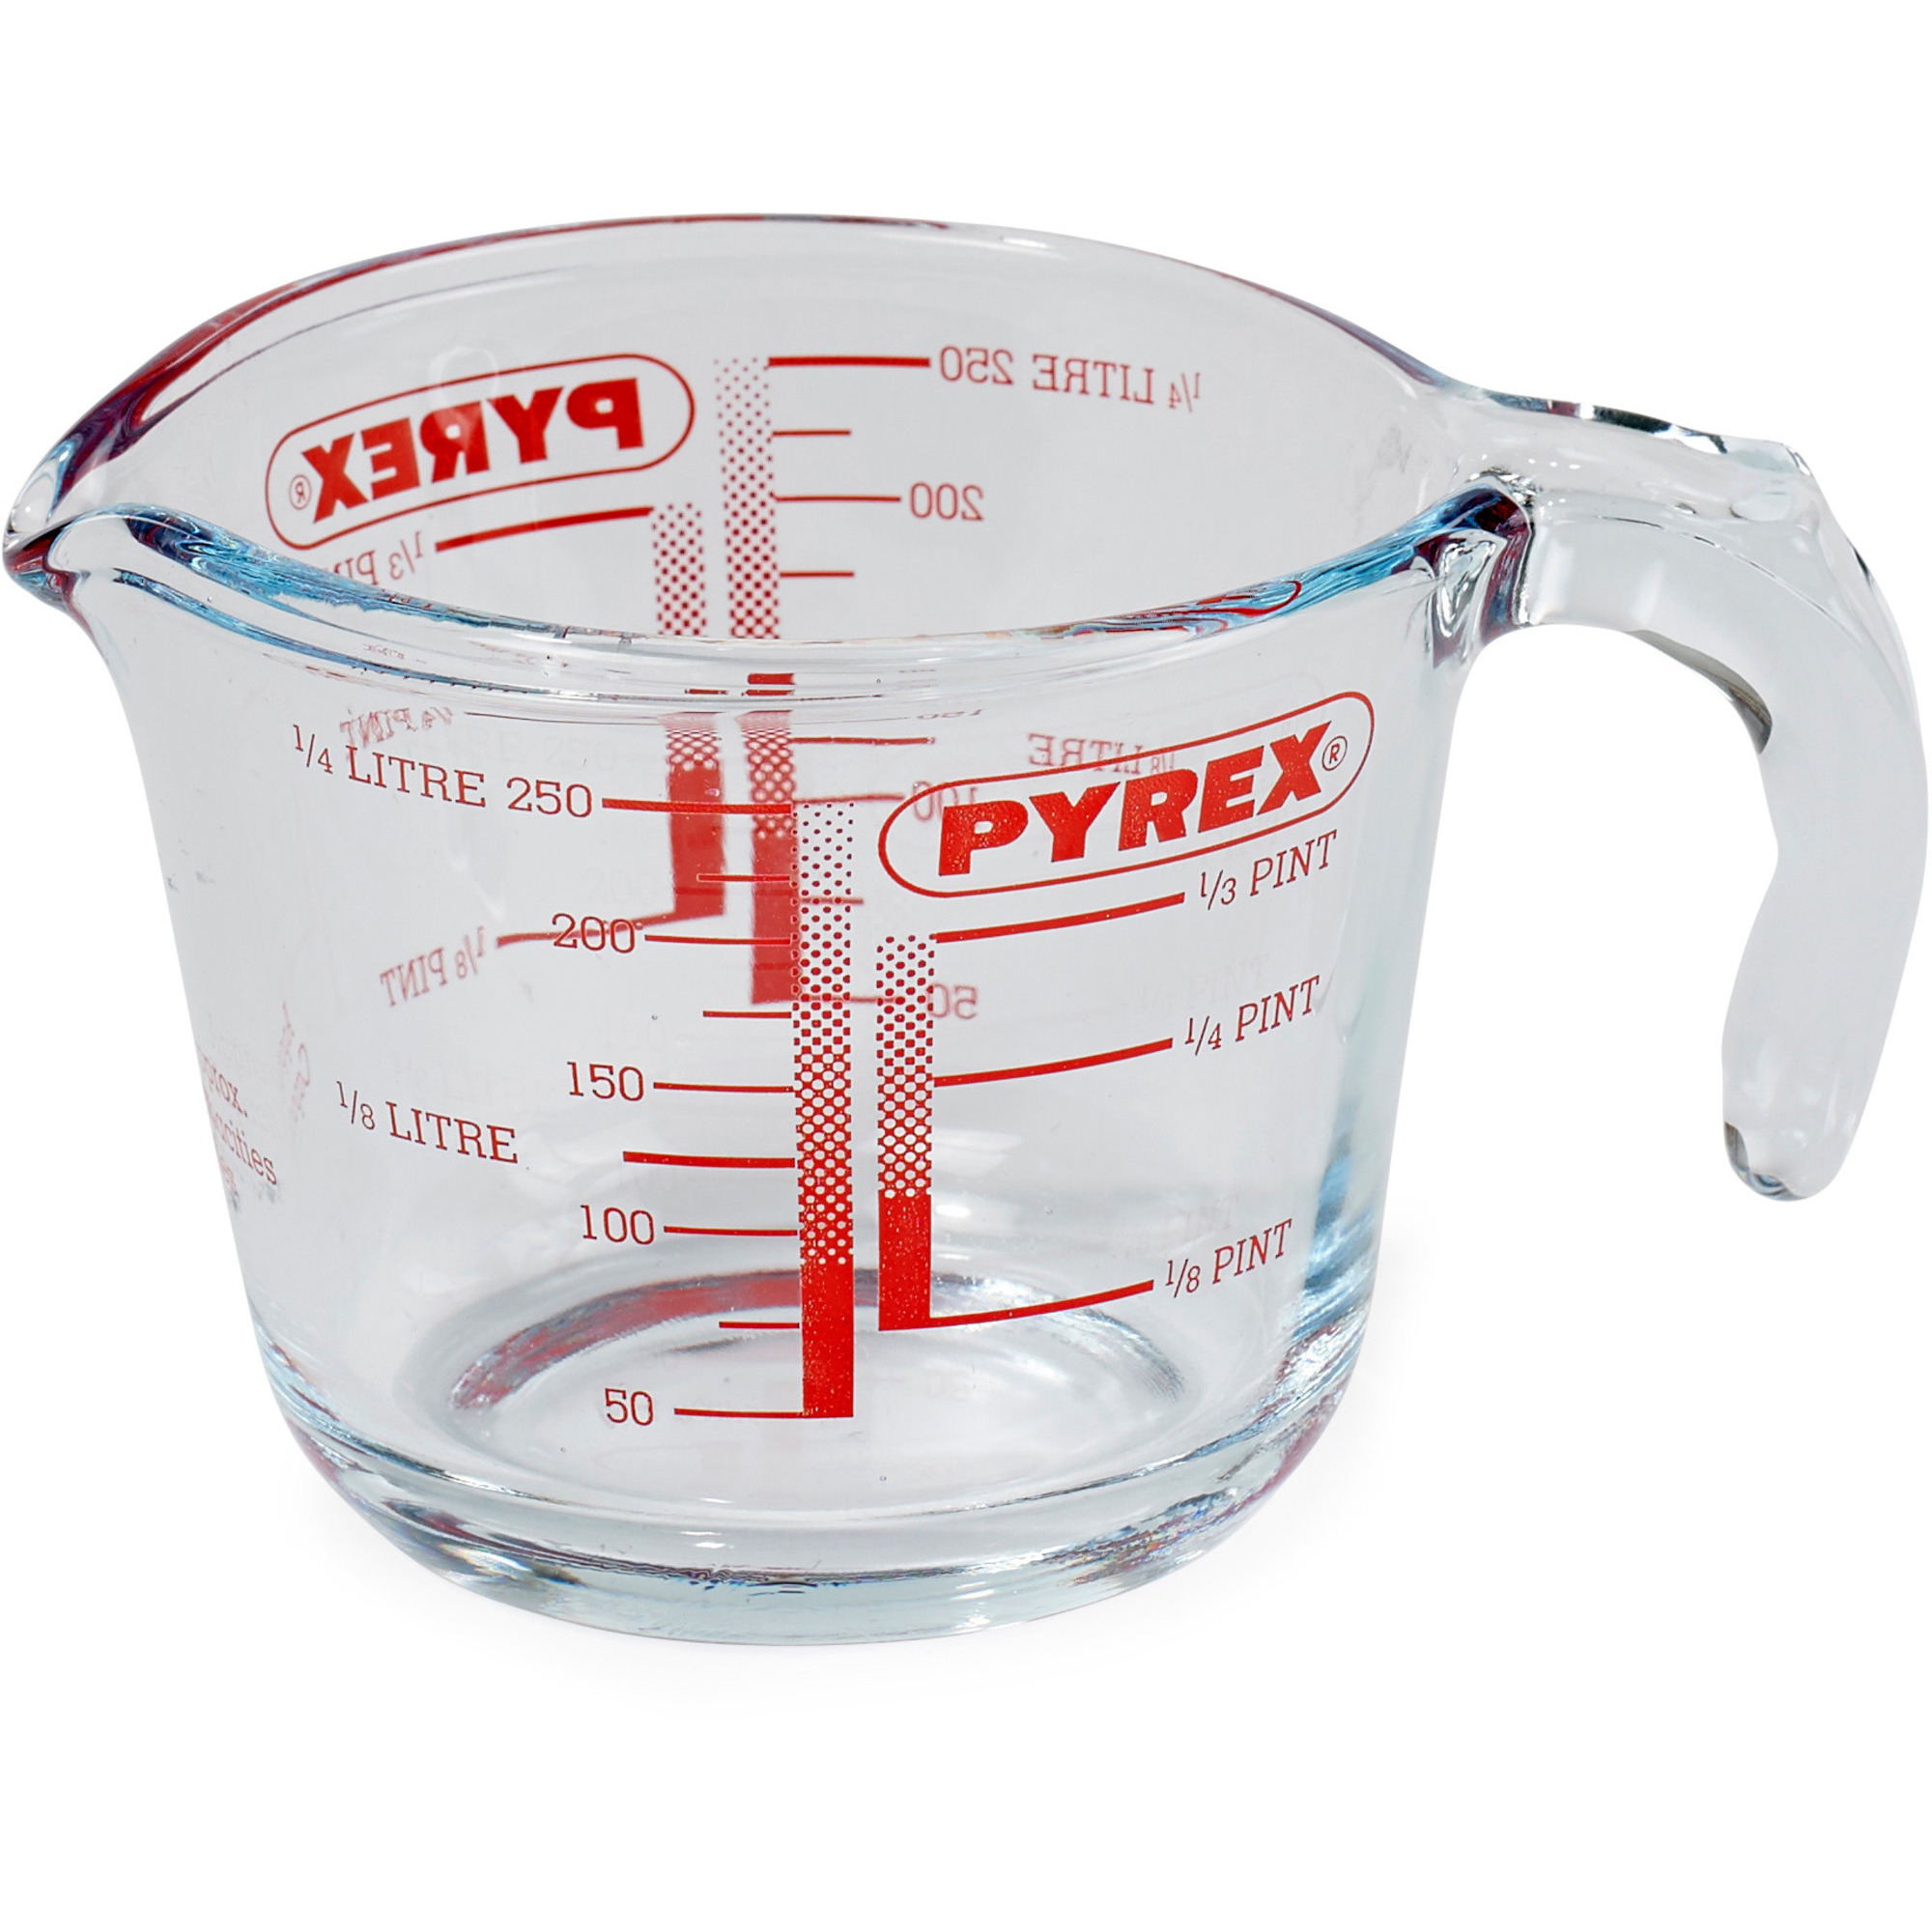 0,25 liter fra Pyrex » rigtige mål, når du laver mad